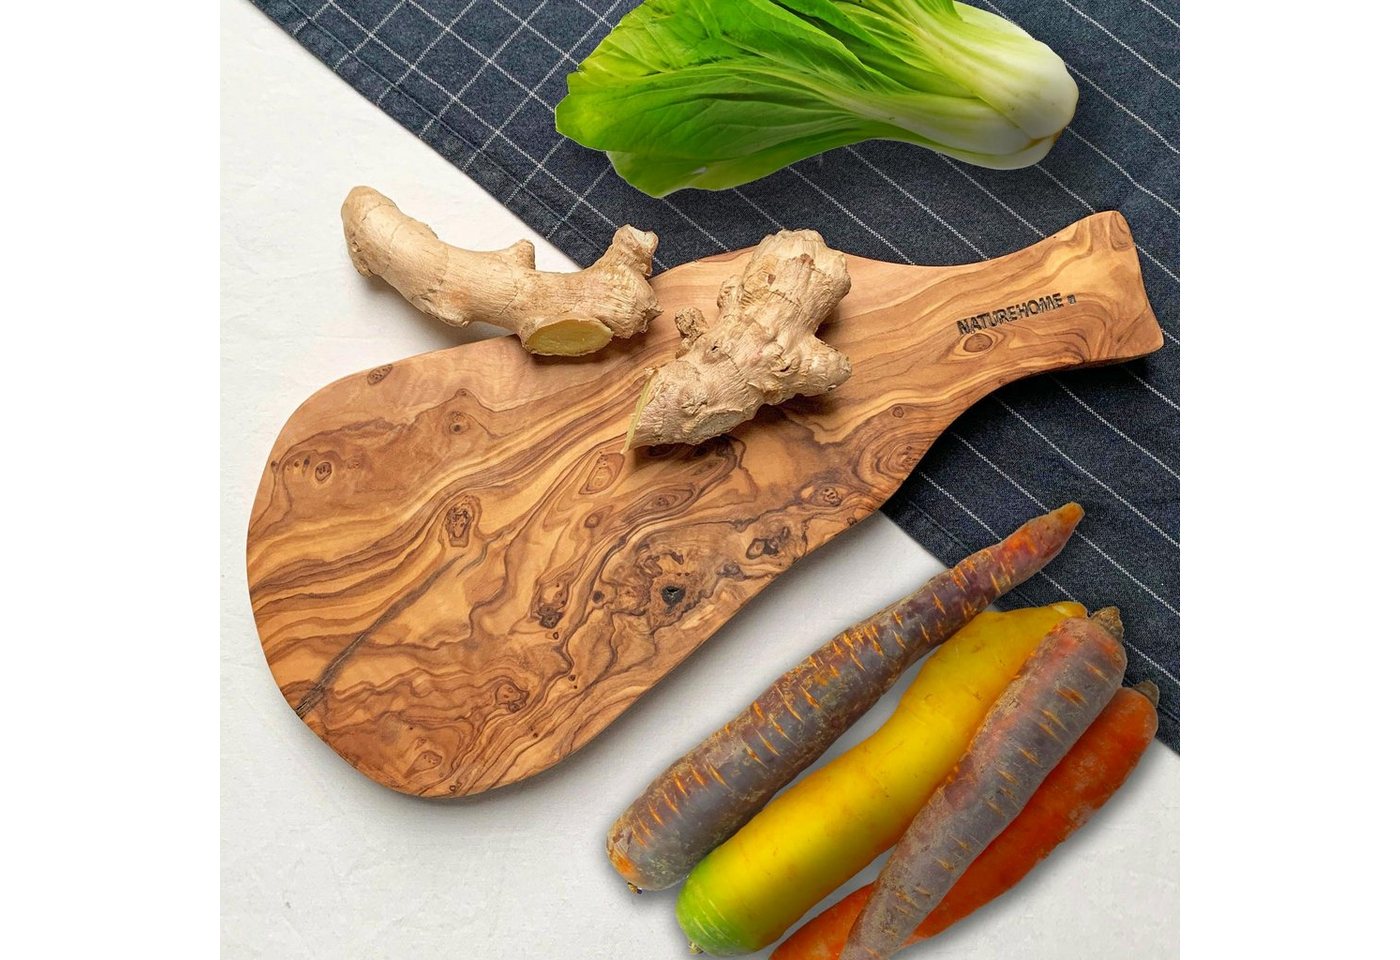 NATUREHOME Schneidebrett Paddle Board Rustikales Schneidebrett Olivenholz Griff 30cm, Holz, Handarbeit, Haltbar von NATUREHOME